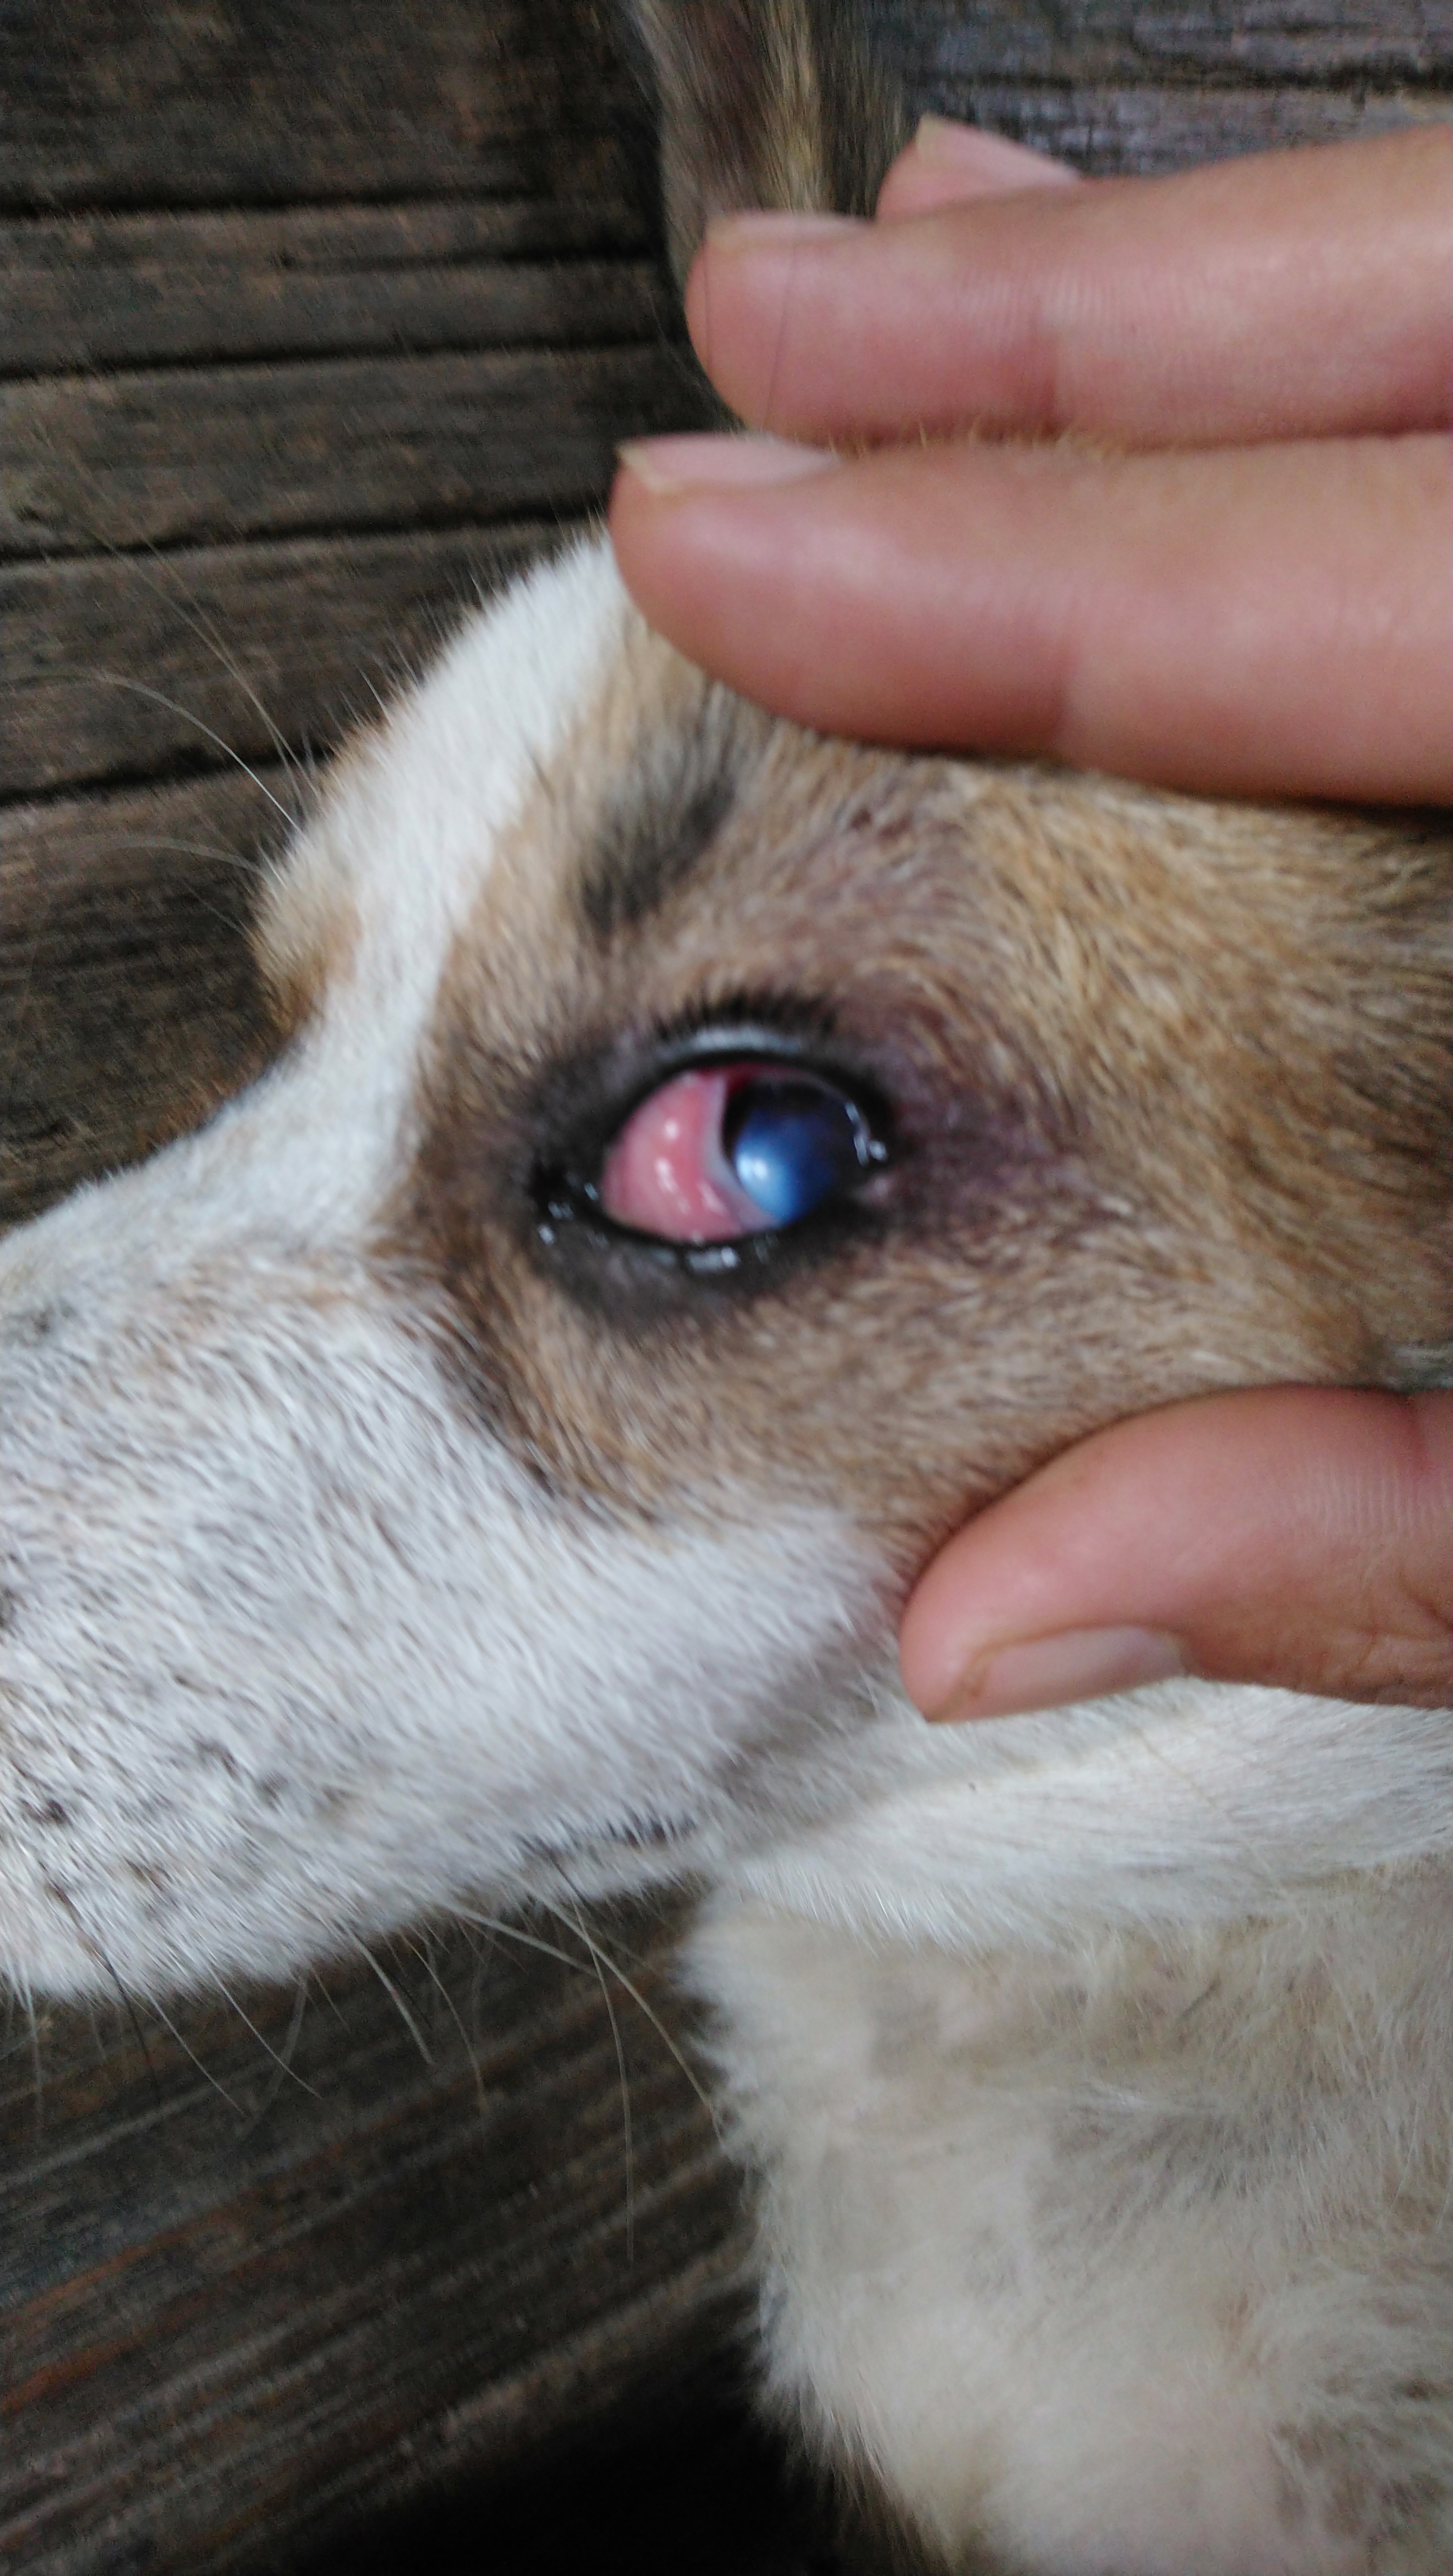 สุนัข​มีดวงตาขาวแดง​และขุ่นใส